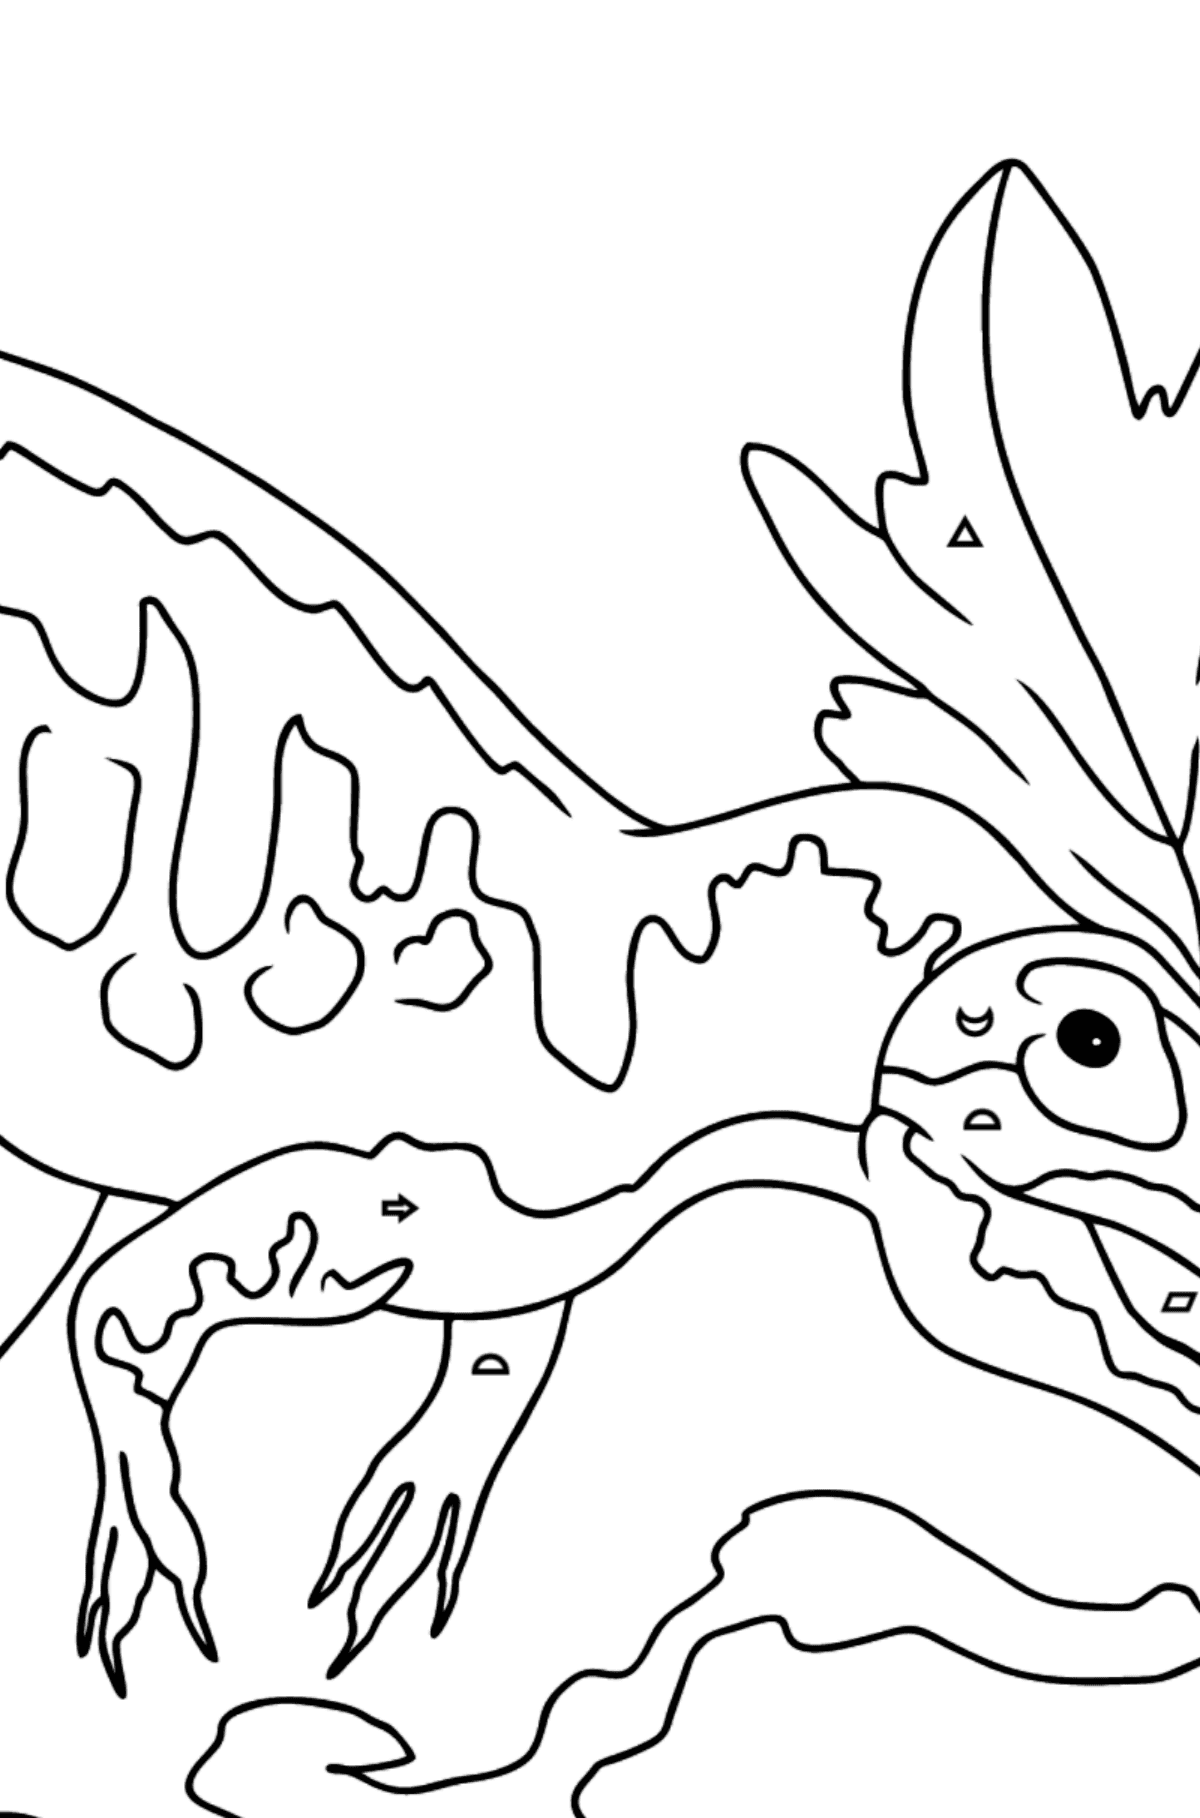 Tegning til fargelegging allosaurus - Fargelegge etter geometriske former for barn